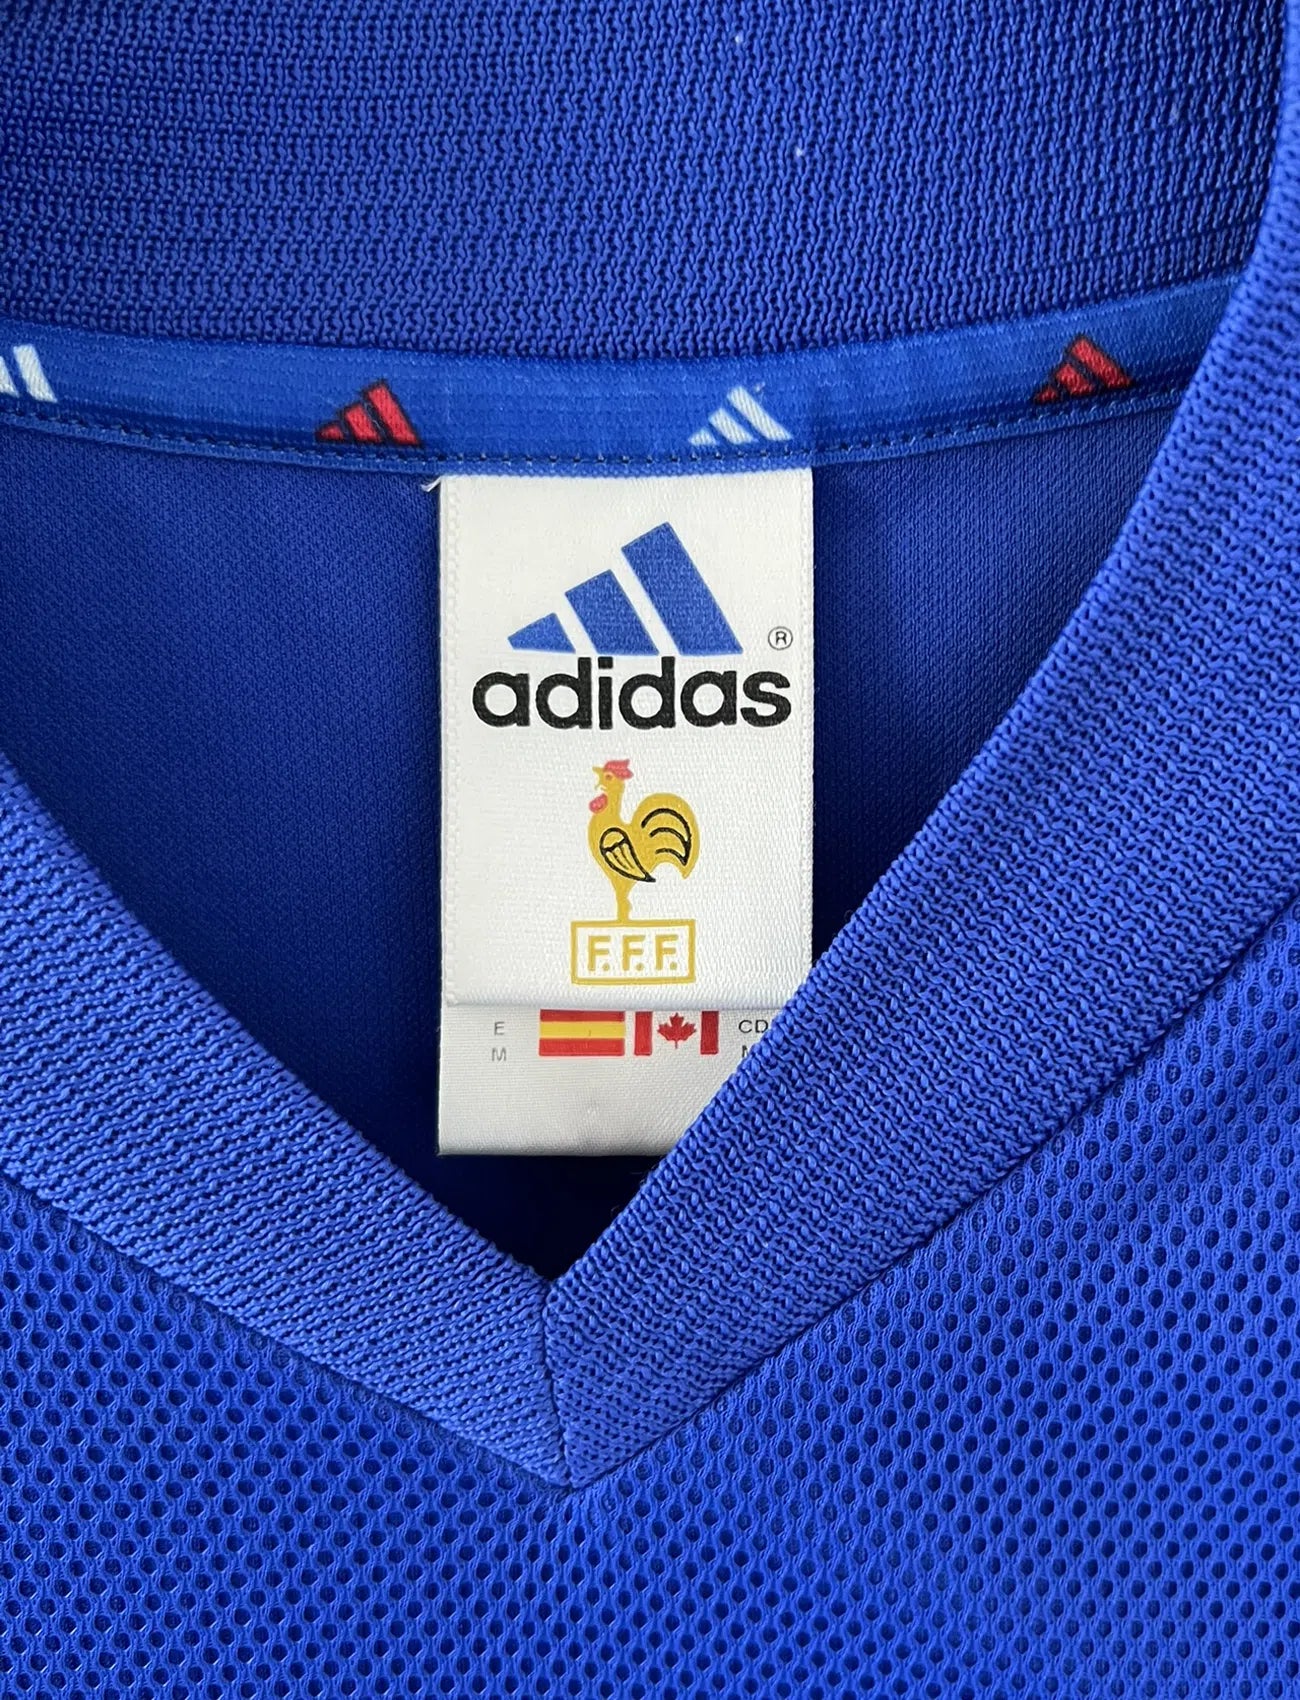 Maillot de foot vintage domicile de l'Equipe de France 2002. Le maillot est de couleur bleu, blanc et rouge. On peut retrouver l'équipementier adidas et le flocage de Zinedine Zidane. Il s'agit d'un maillot authentique. Le maillot possède l'étiquette d'authenticité comportant les numéros 139531.